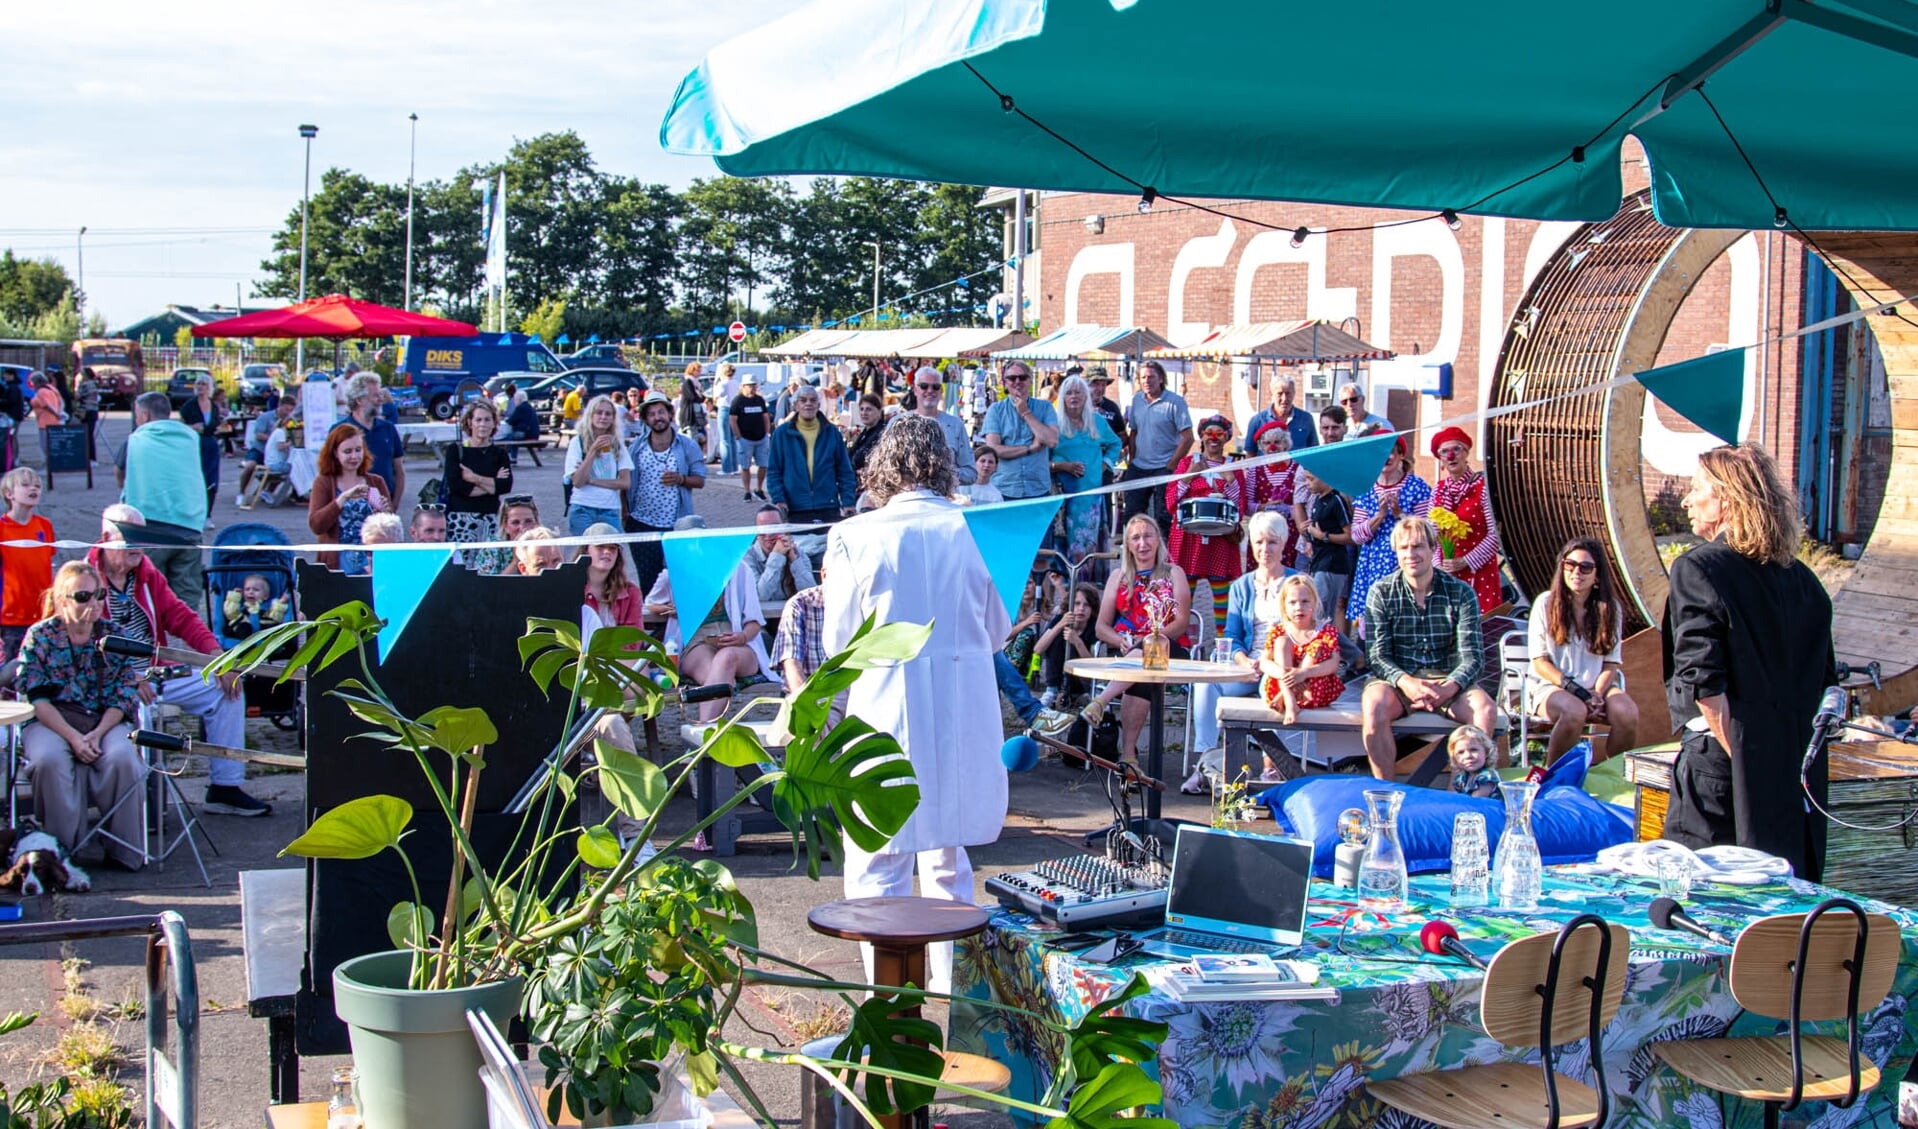 Broedplaats BOGOTÁ in Halfweg organiseert een inspirerende zomermarkt op 4 juni.